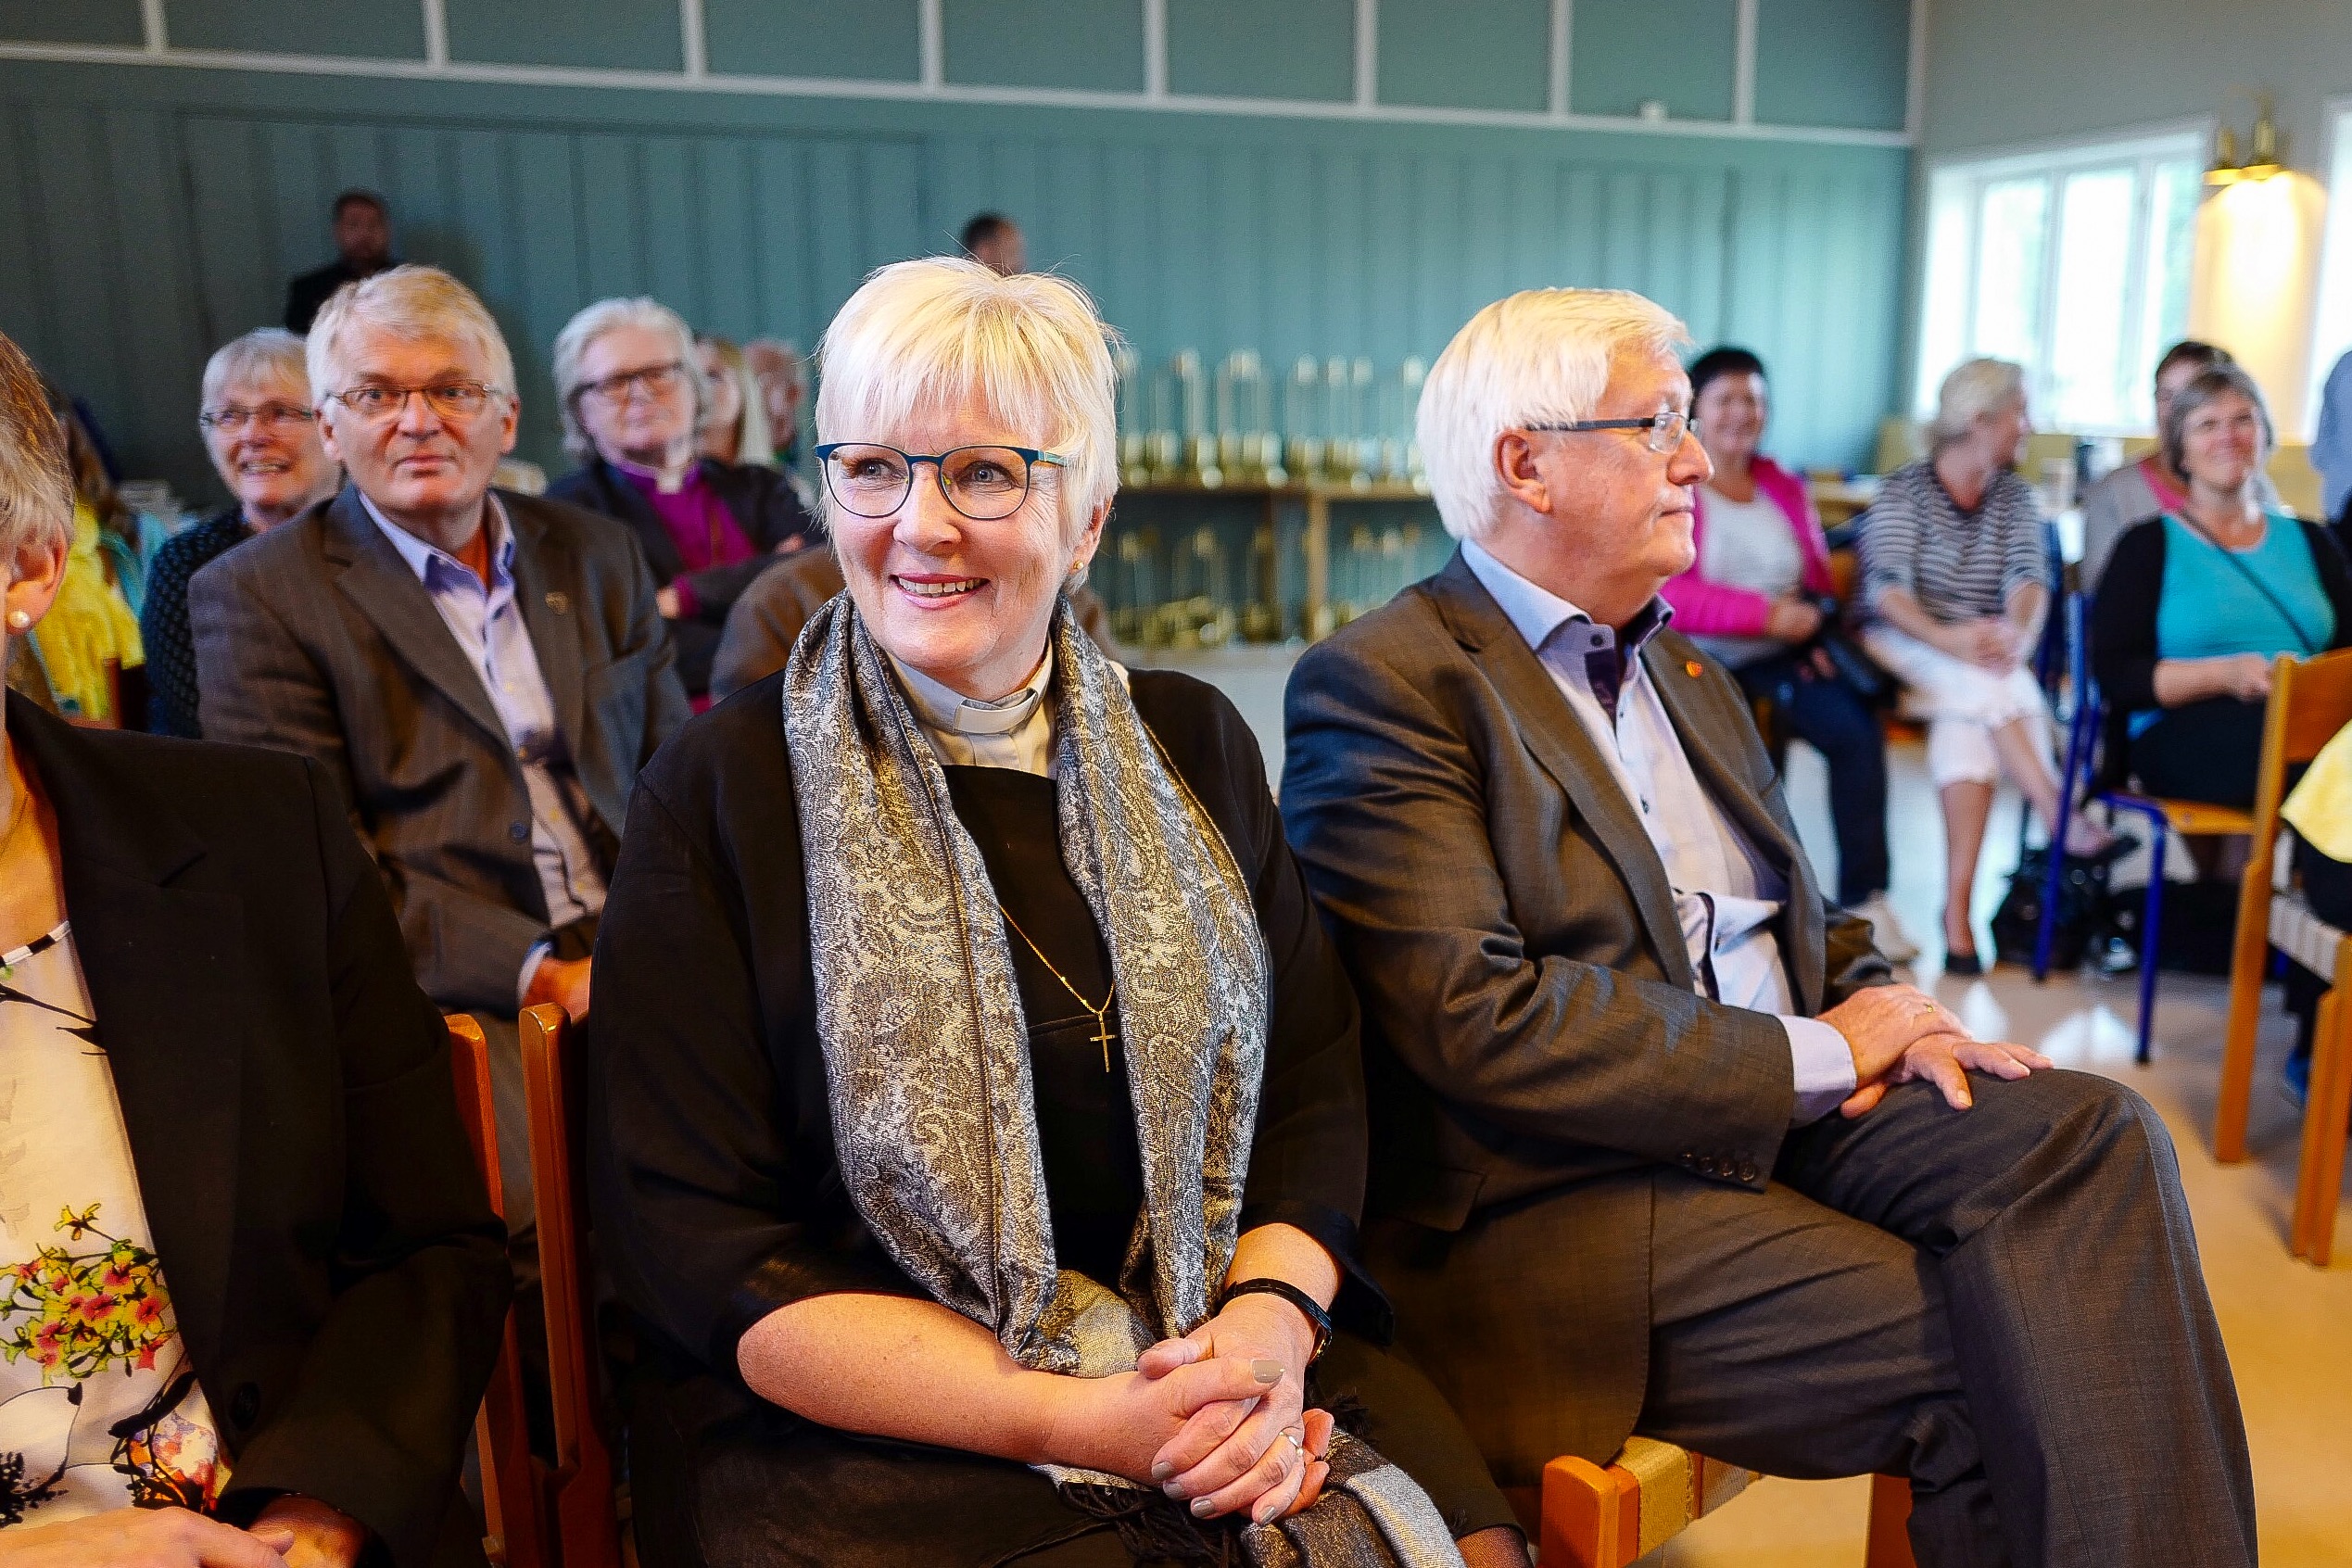 Den nye biskopen, som fram til nå har vært Den norske kirkes prost i Lofoten, blir presentert på en pressekonferanse i Bodø torsdag formiddag.